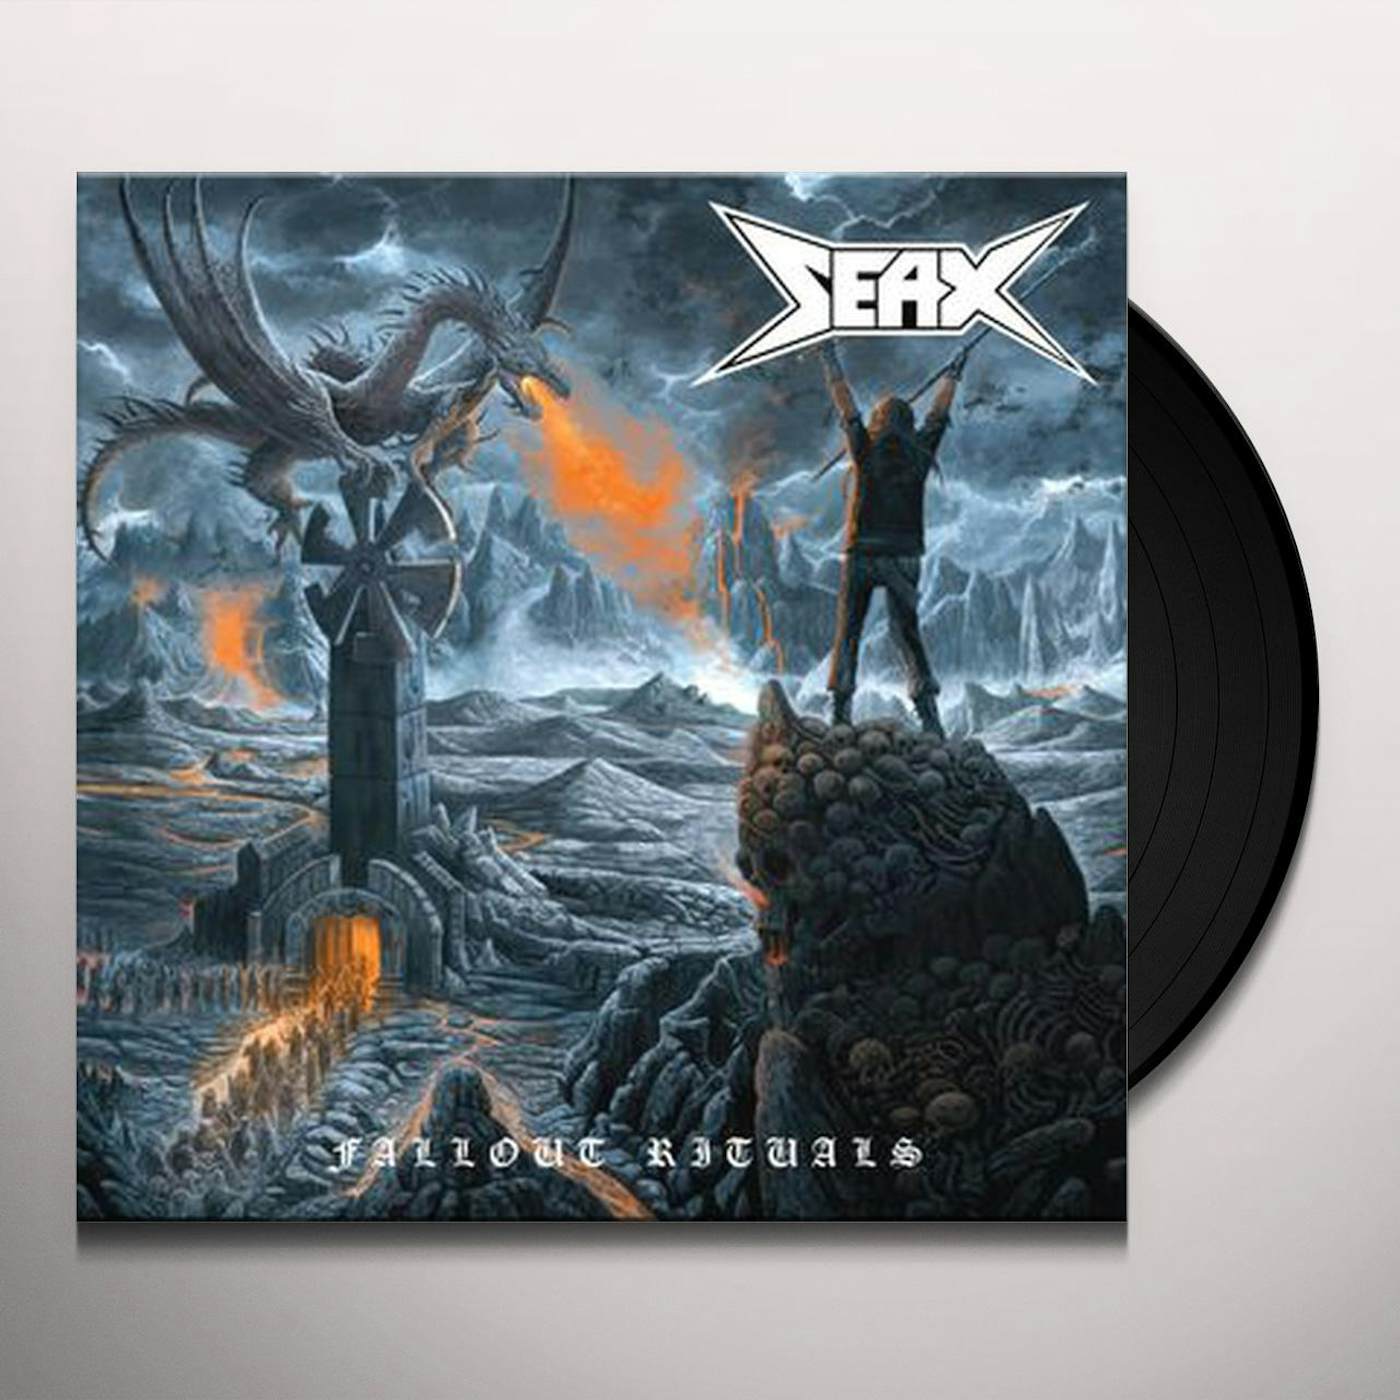 Seax Fallout Rituals Vinyl Record